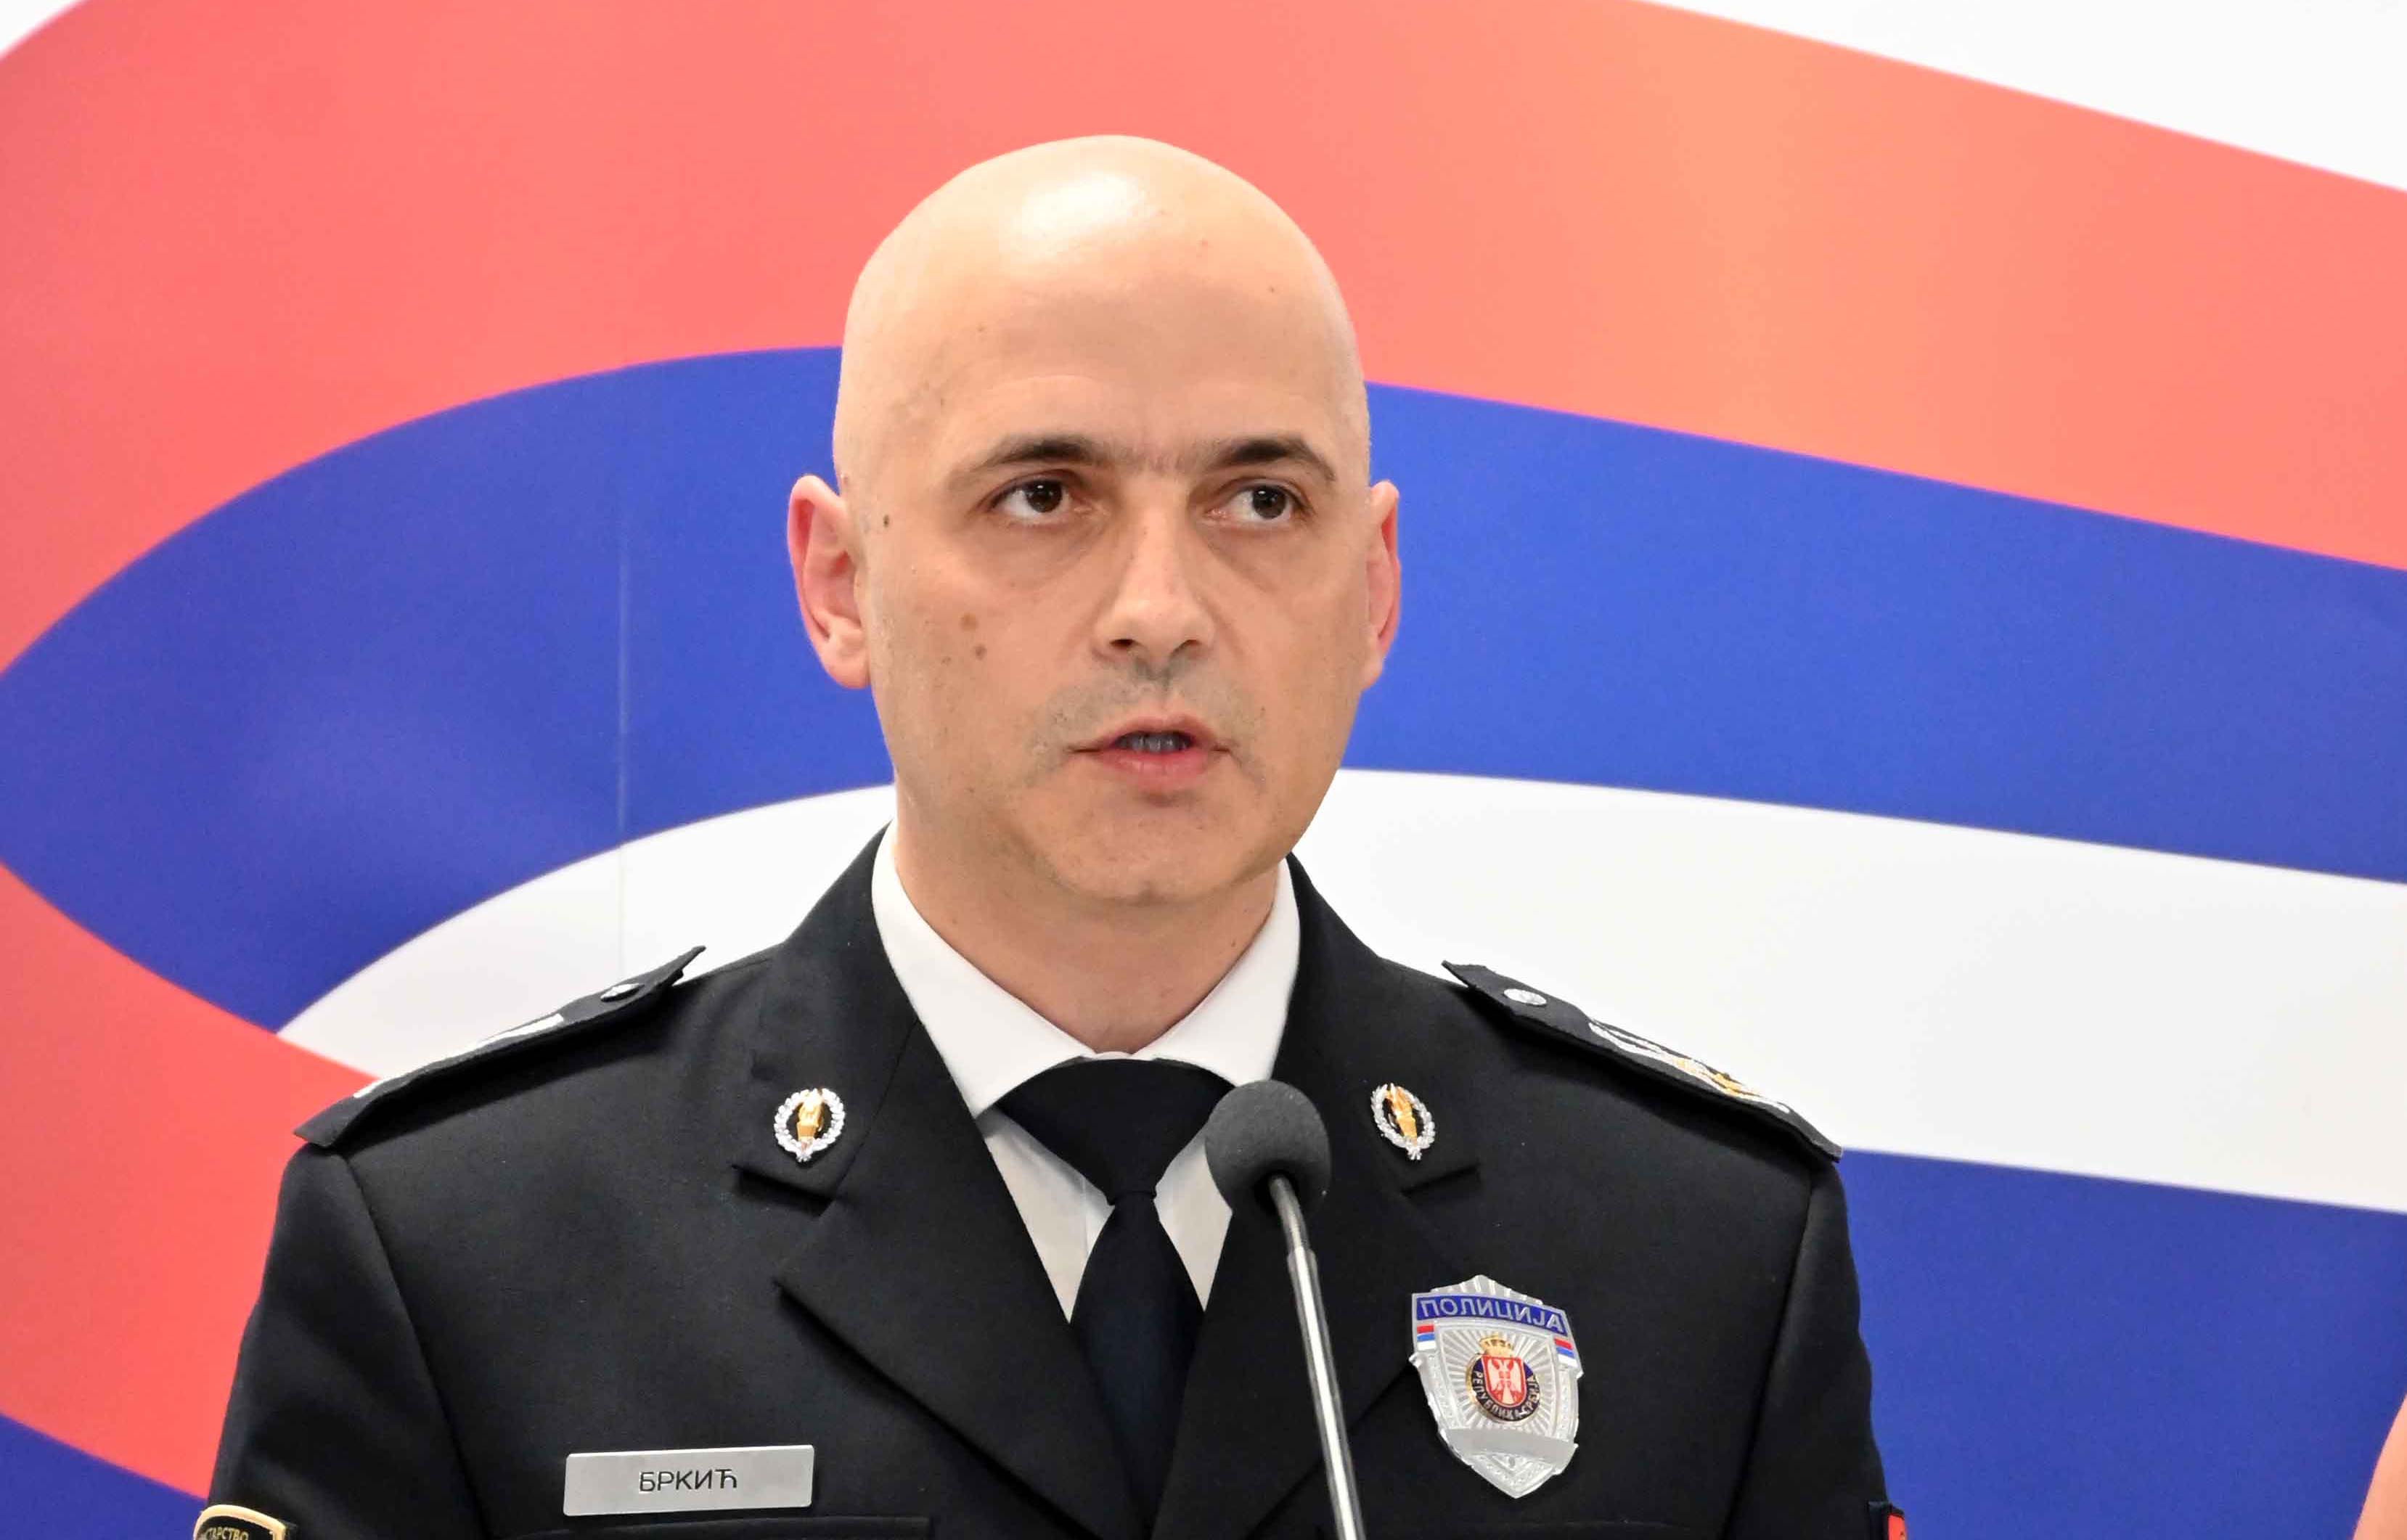 Ухапшена тројица припадника такозване косовске полиције